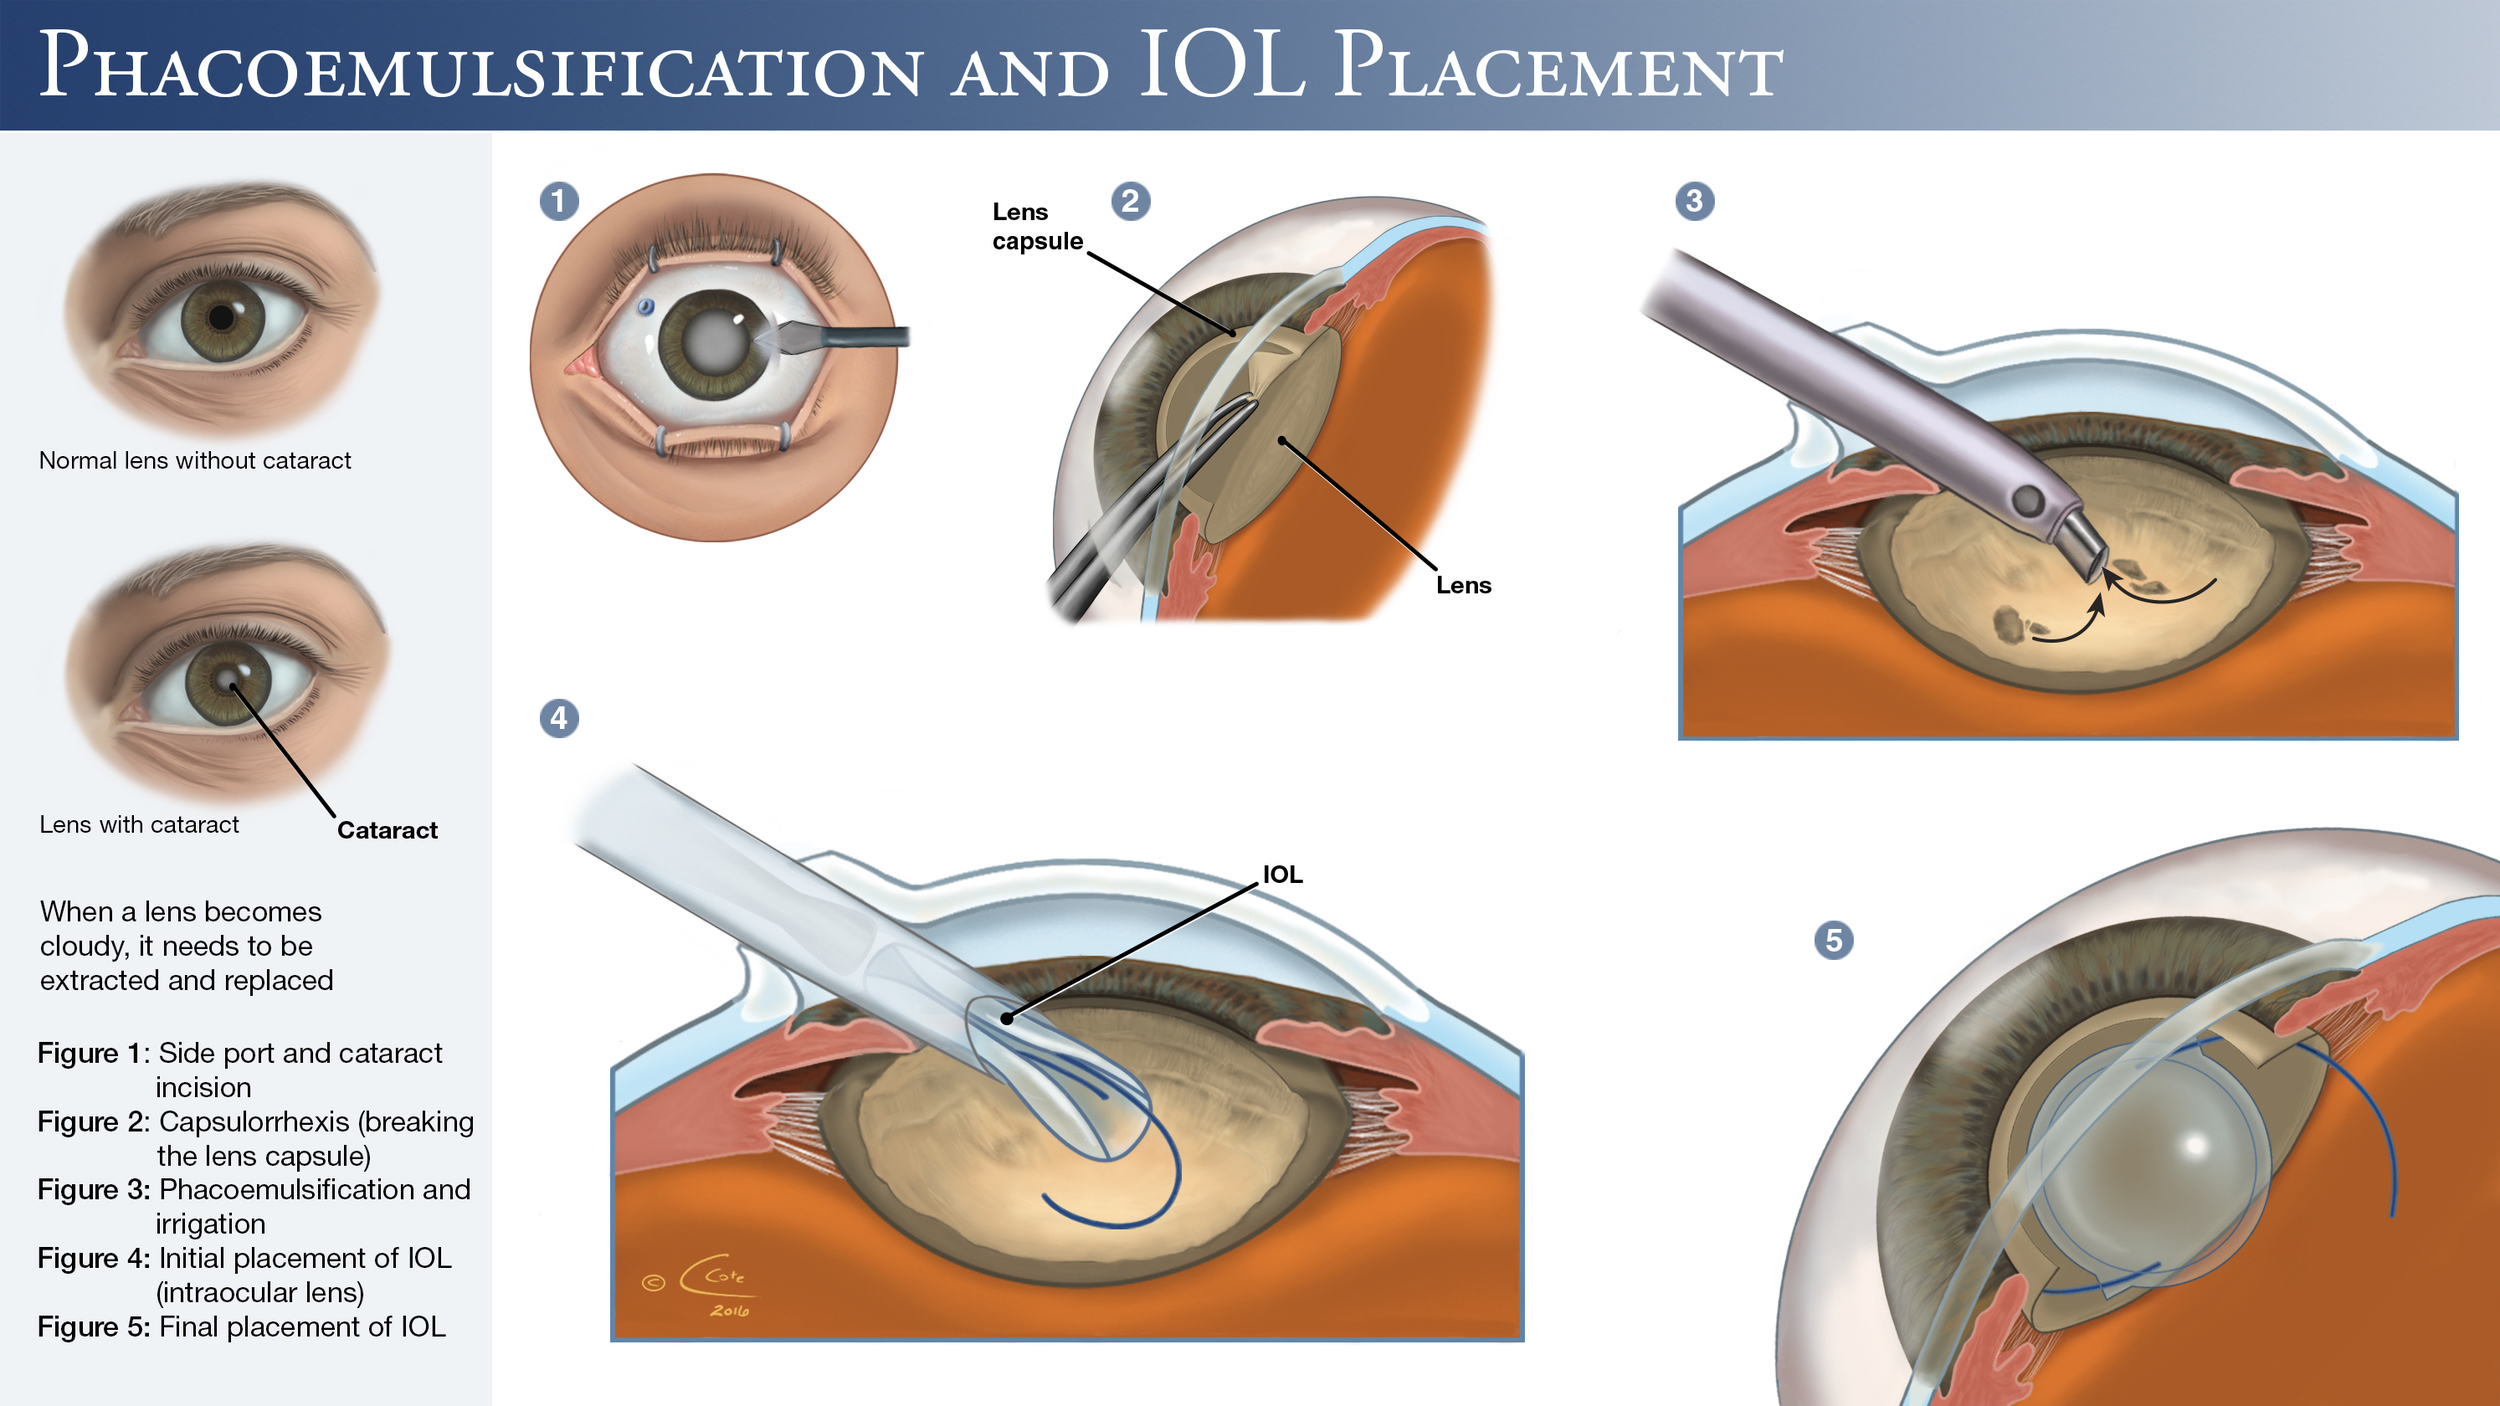 Замена хрусталика что нельзя делать после операции. Факоэмульсификация катаракты с имплантацией интраокулярной линзы. Операция ультразвуковая факоэмульсификация катаракты. Катаракта операция с имплантацией ИОЛ. Факоэмульсификация катаракты этапы операции.